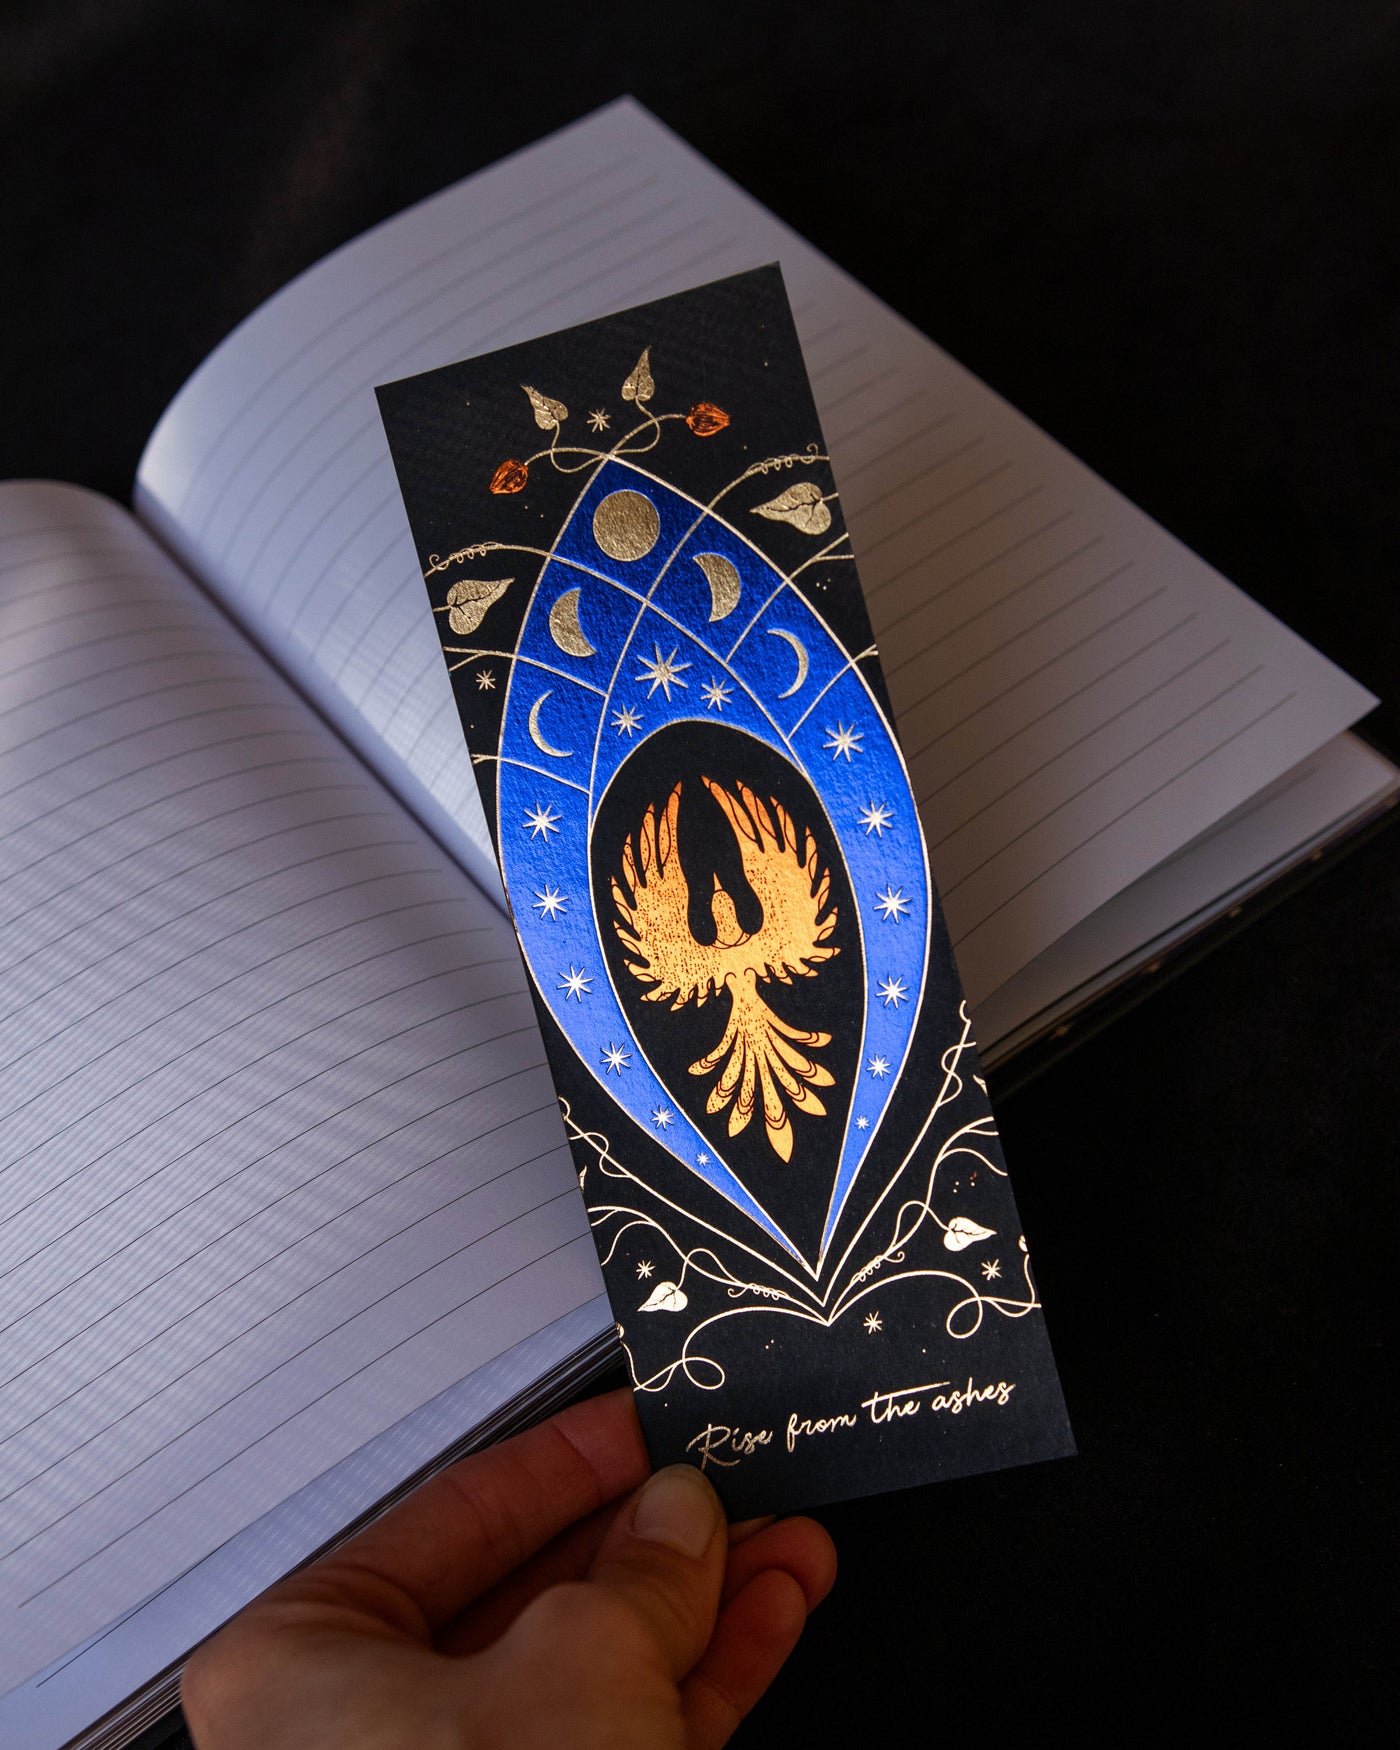 The Phoenix Bookmark